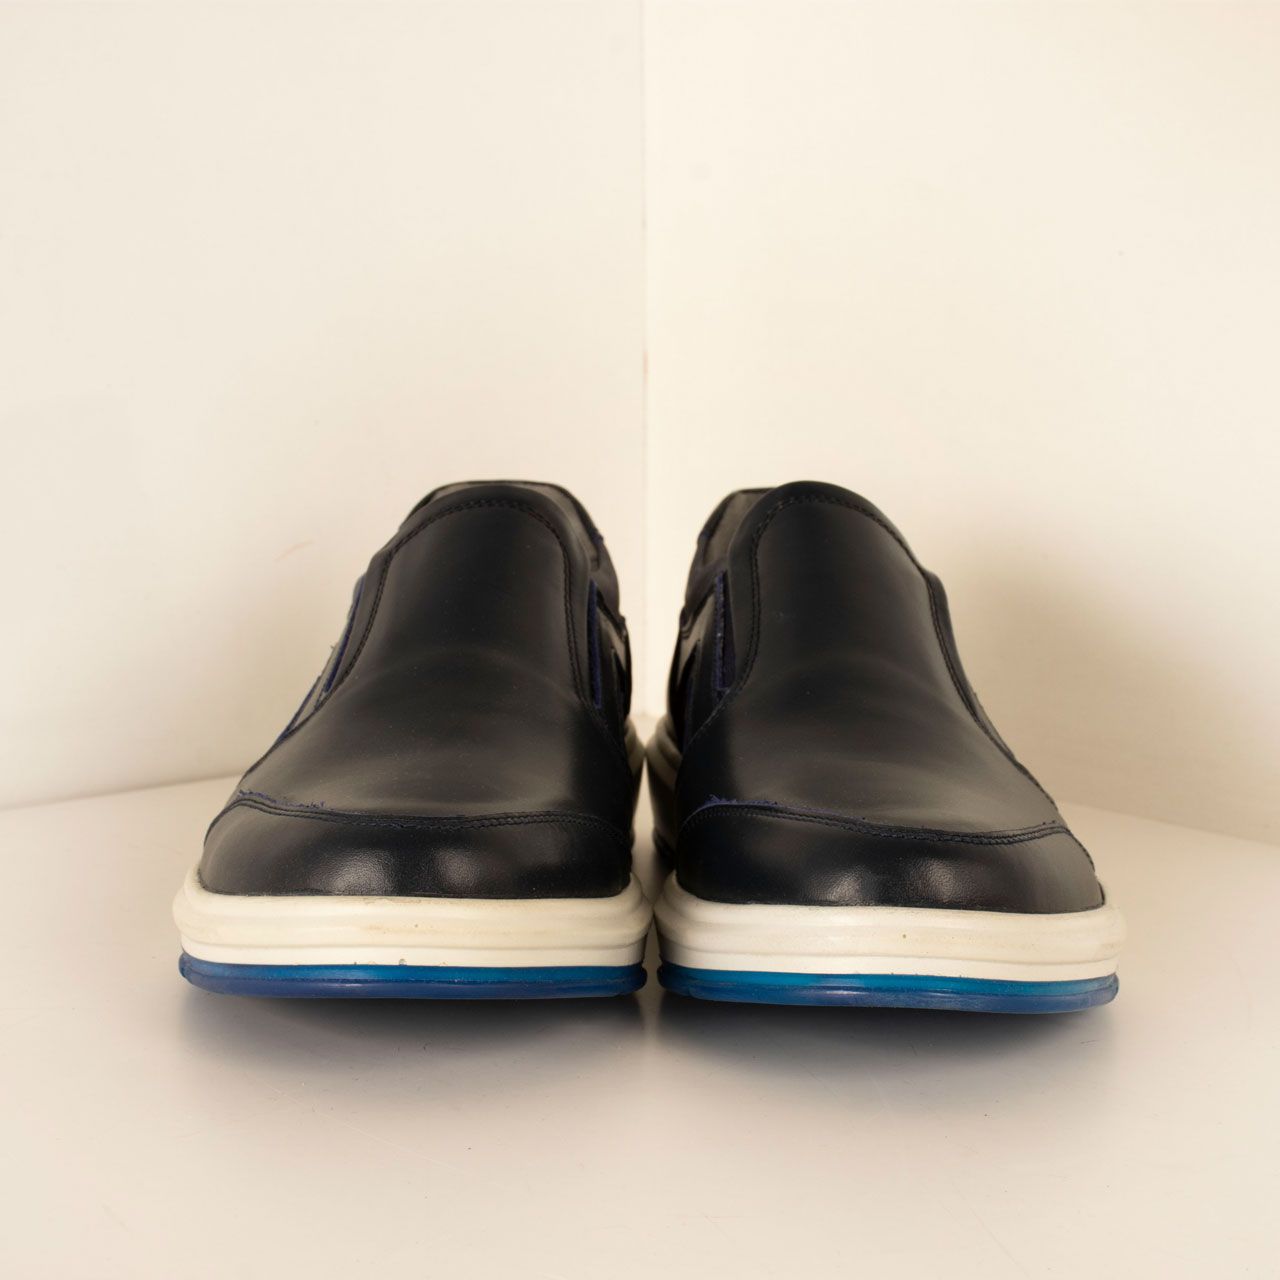  کفش روزمره مردانه پارینه چرم مدل SHO194-11 -  - 5